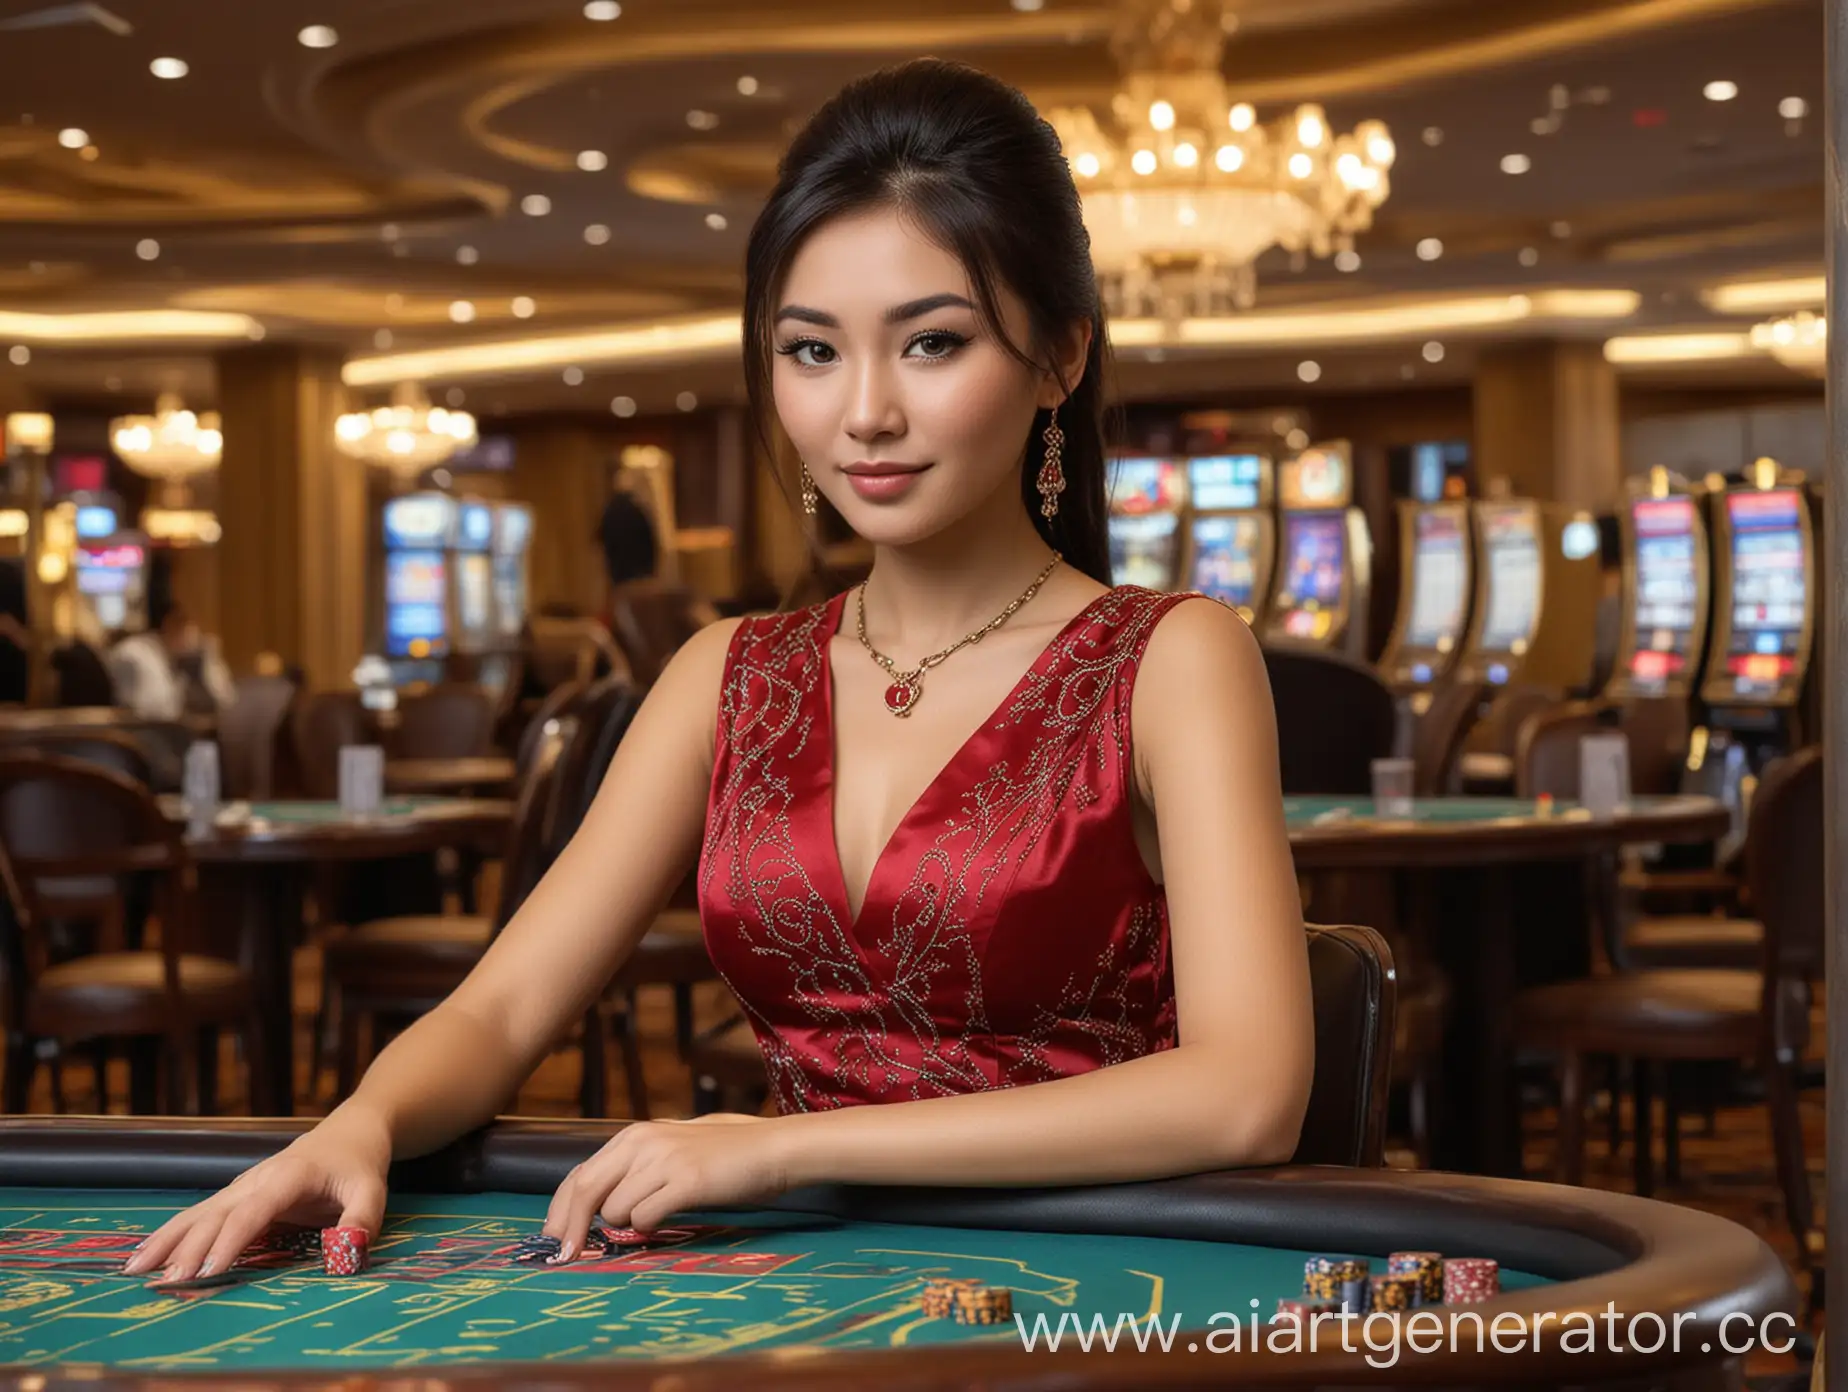 Красивая казахская девушка дилер в казино, изображение формата PNG